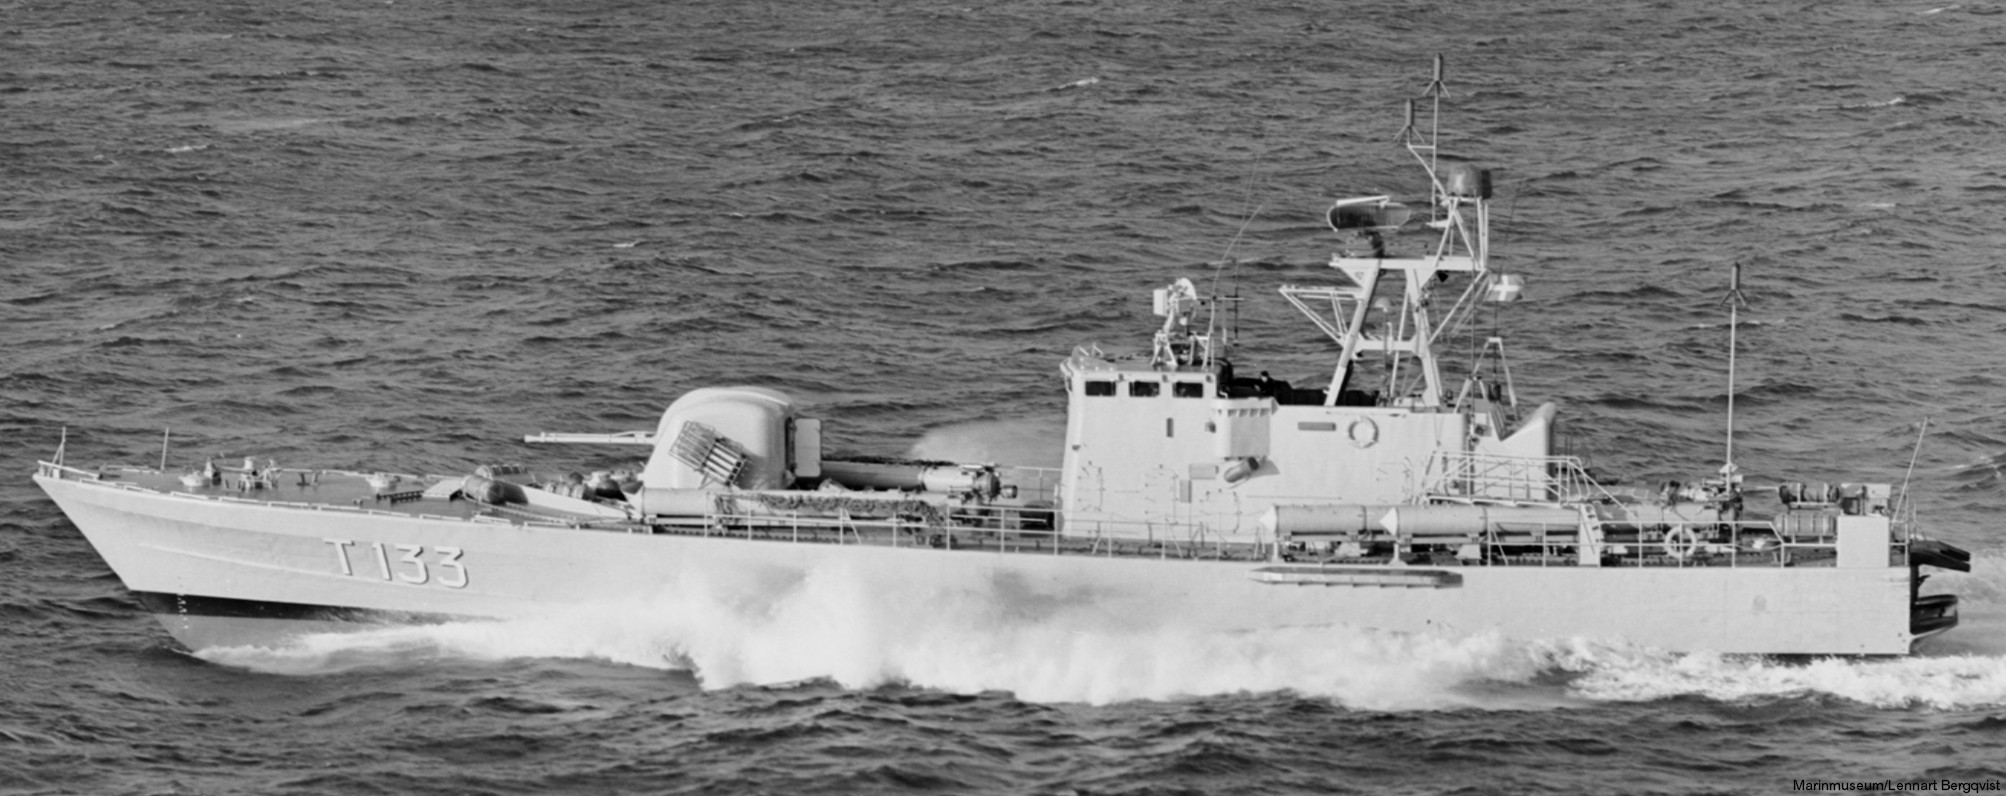 t133 norrtälje hswms hms norrköping class fast attack craft torpedo missile patrol boat swedish navy svenska marinen 08